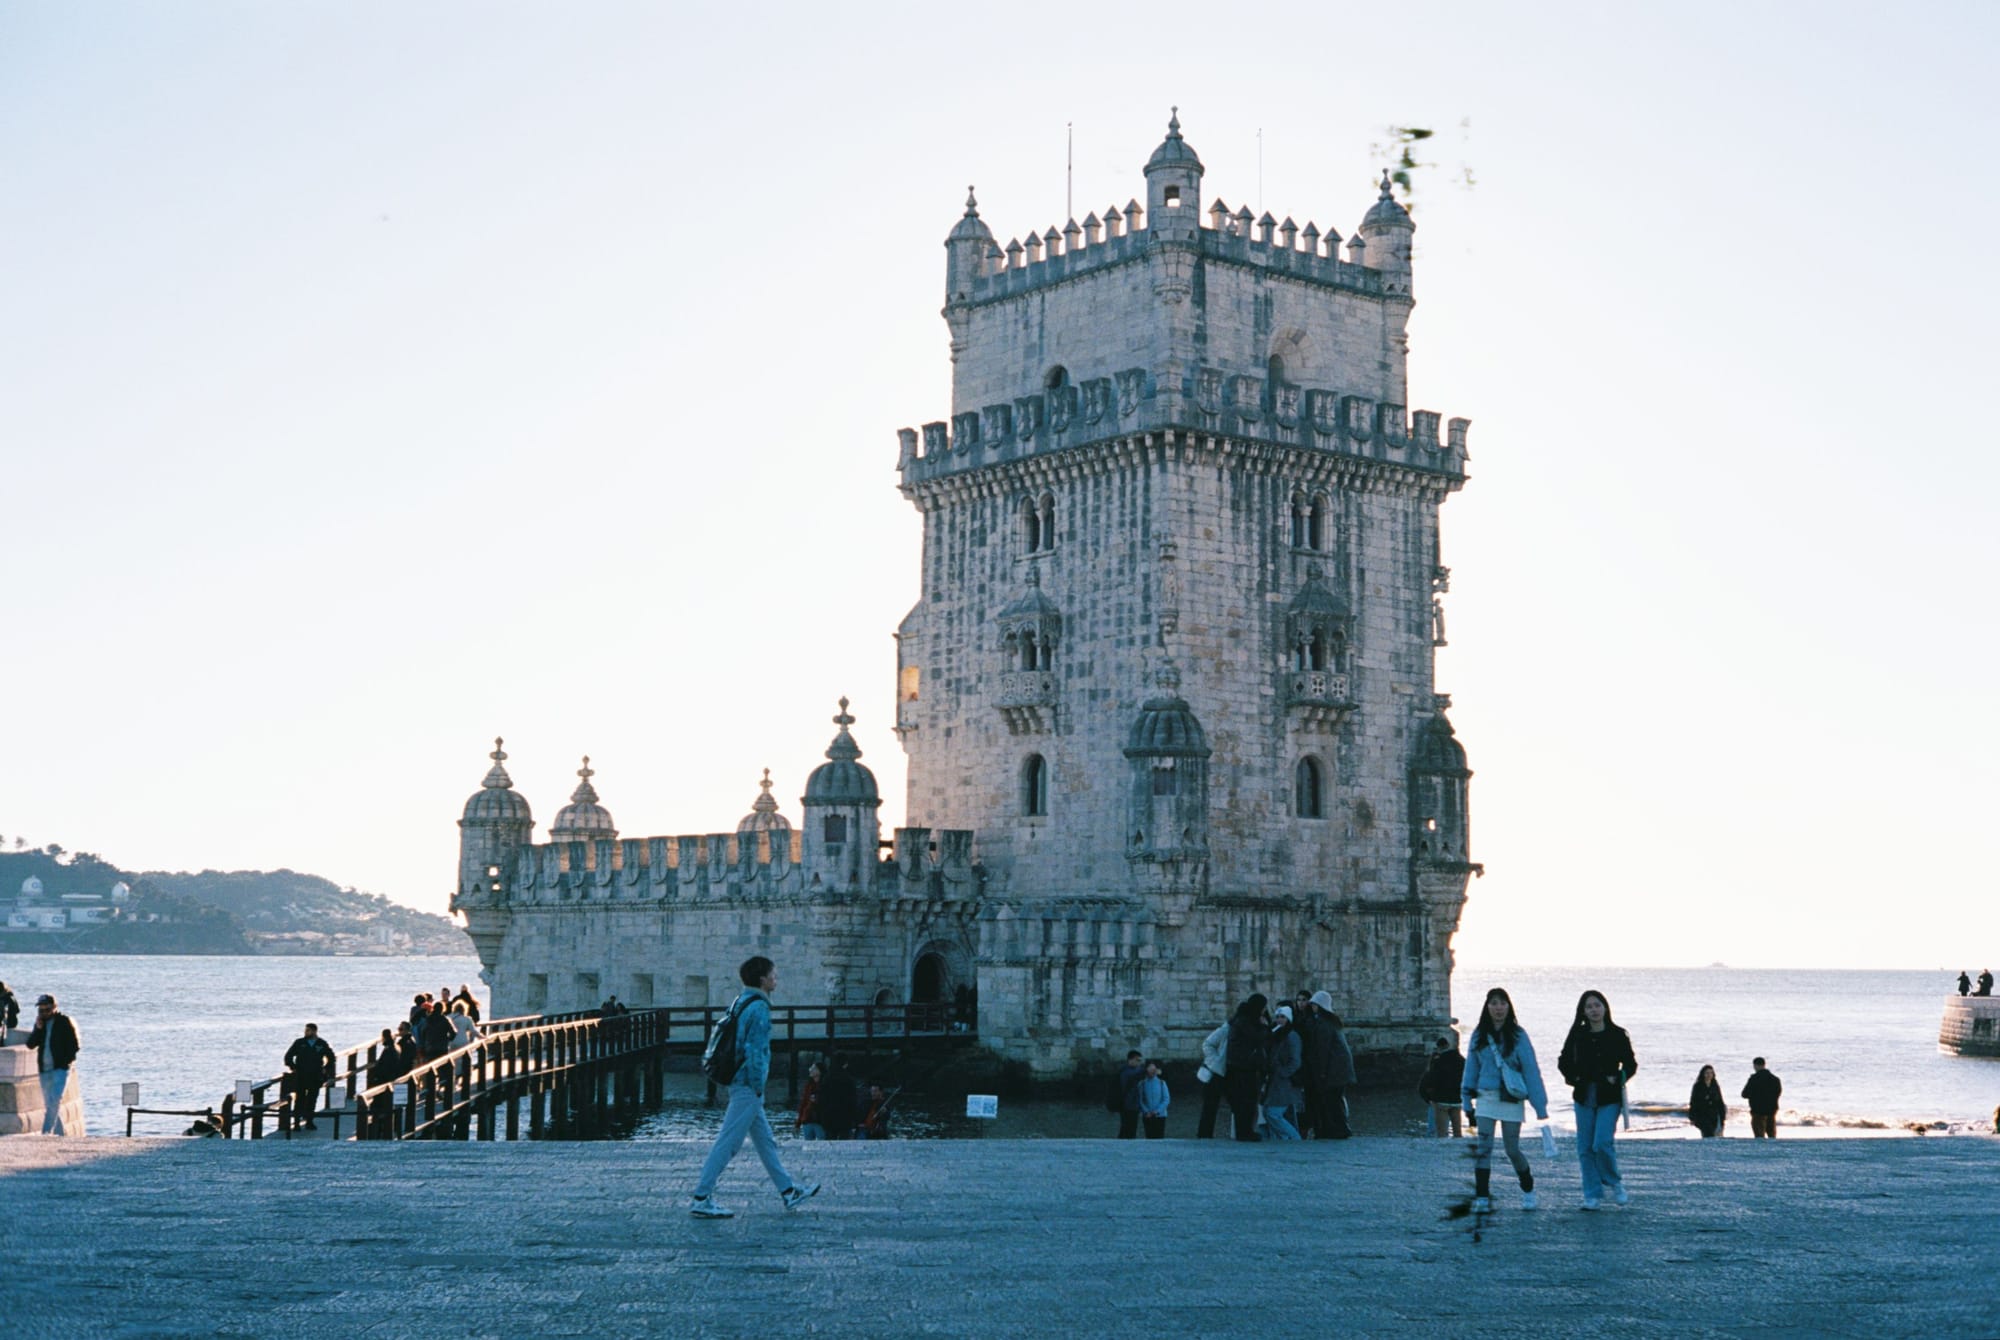 Lisboa aka Lisbon - The vibrant capital city of Portugal